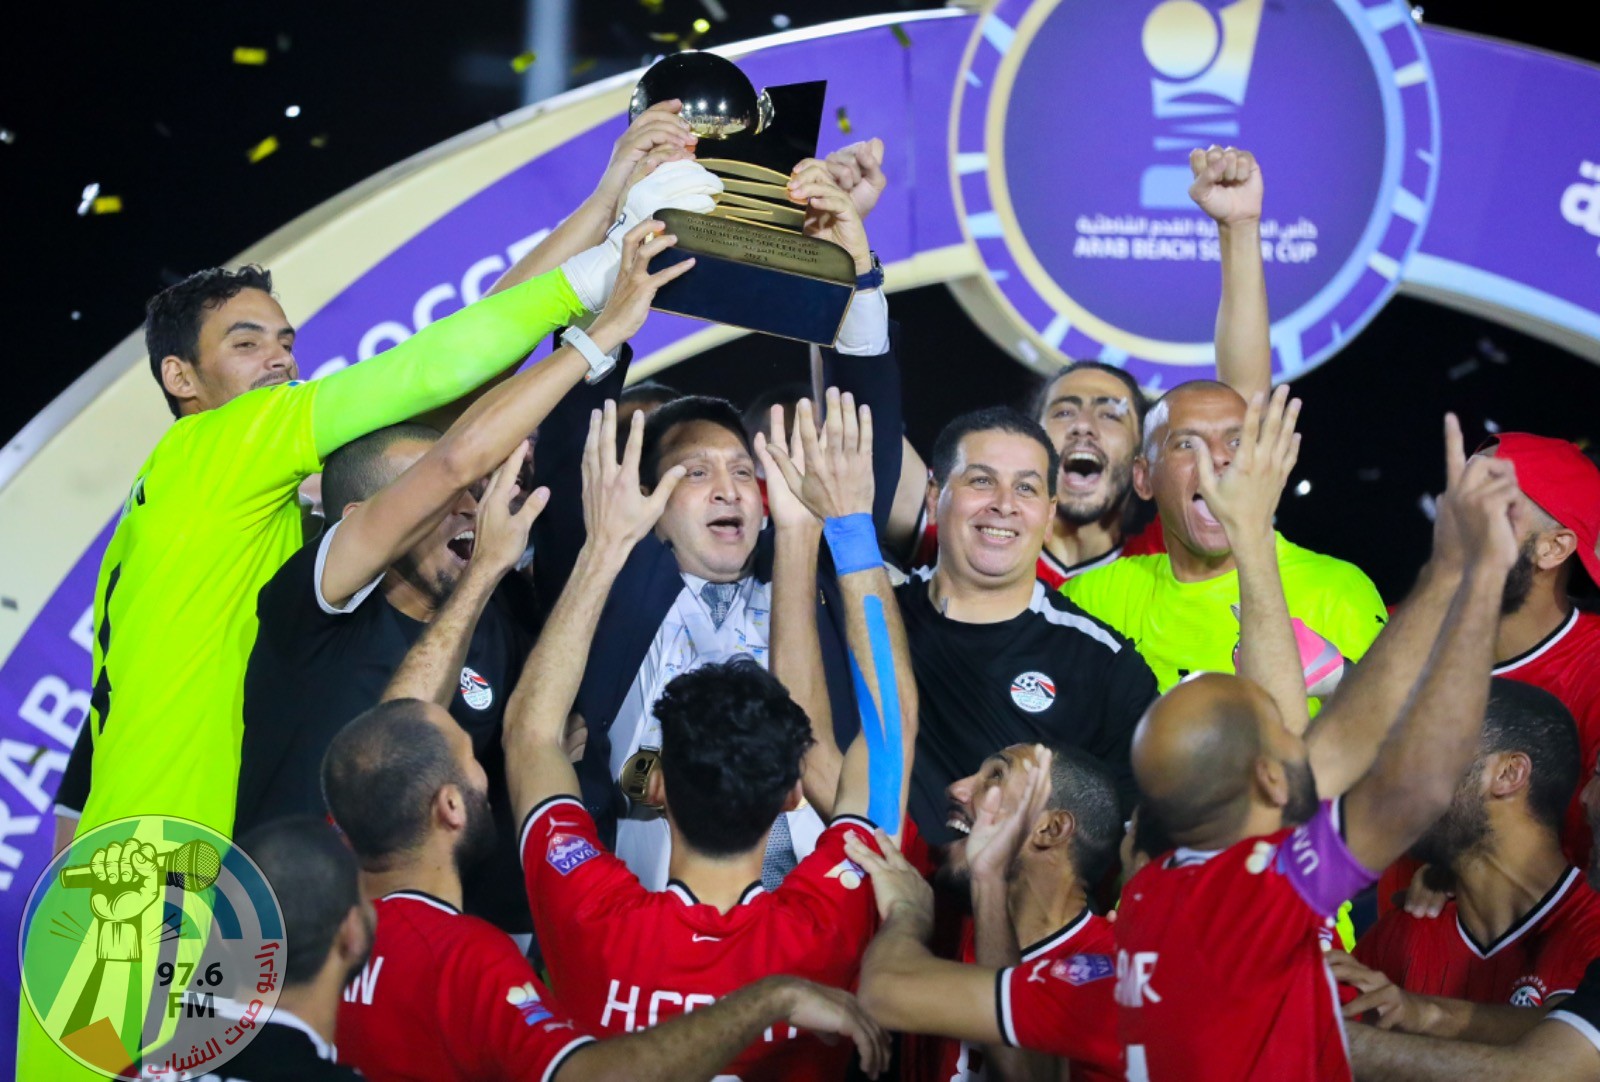 تتويج المنتخب المصري لكرة القدم الشاطئية